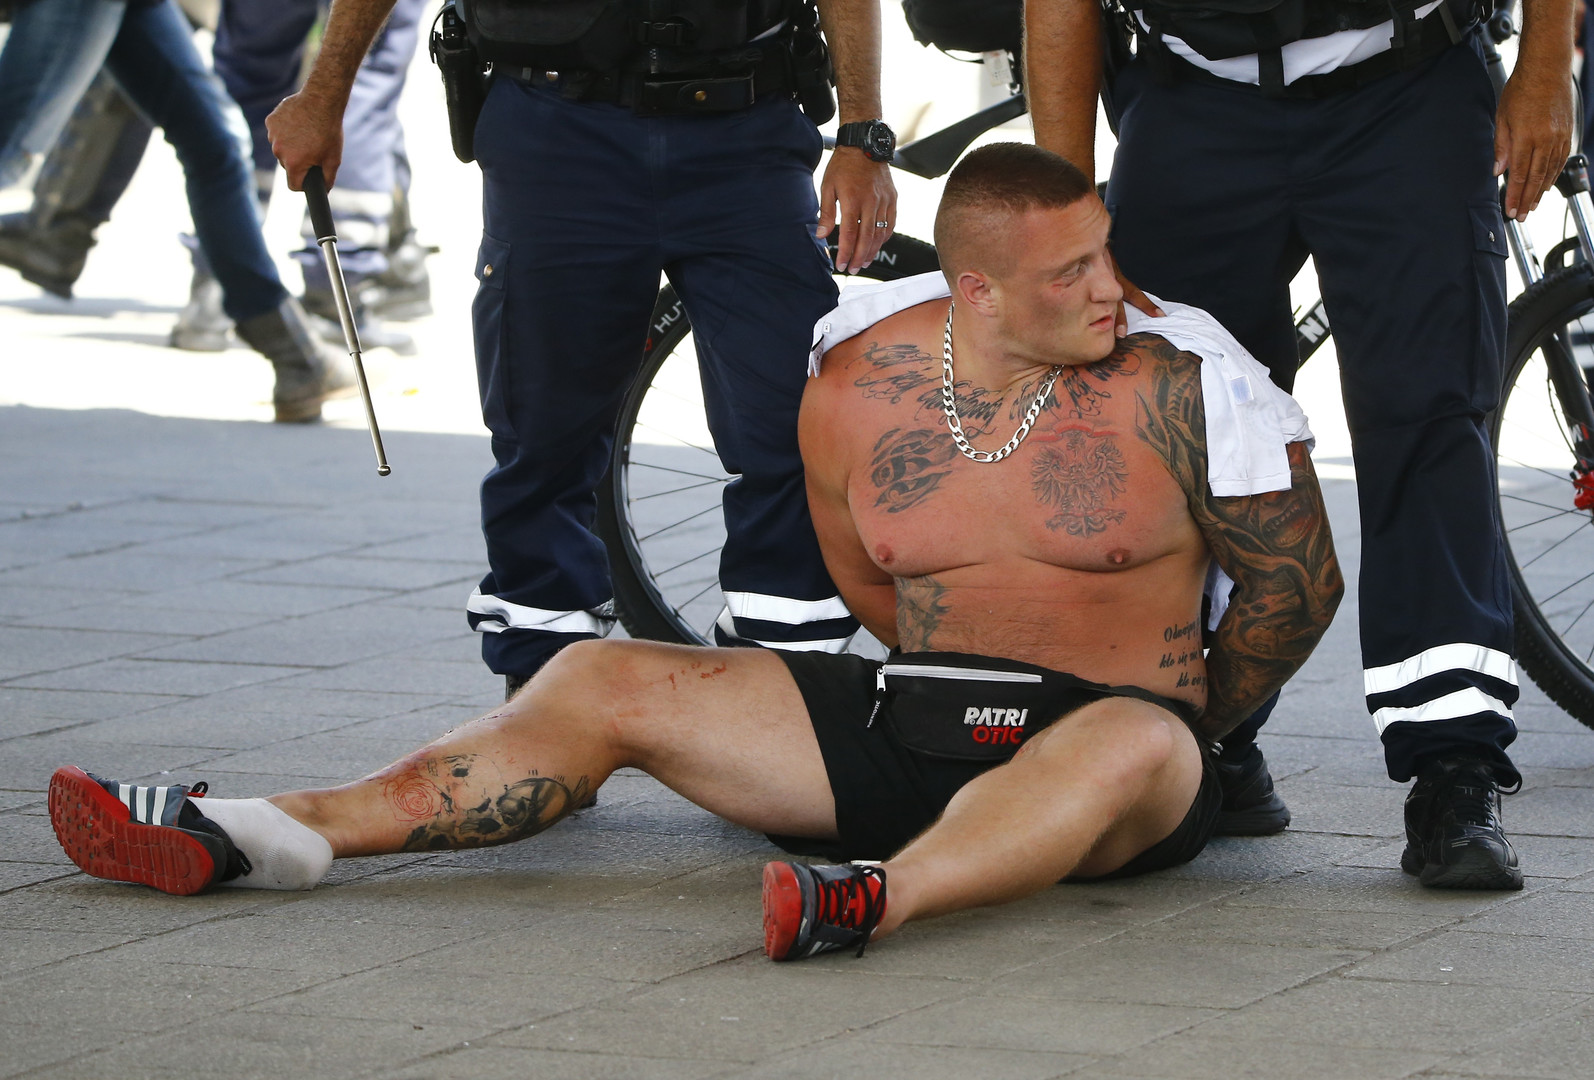 Nouvelles violences de supporters à Marseille avant le match Pologne - Ukraine (IMAGES)